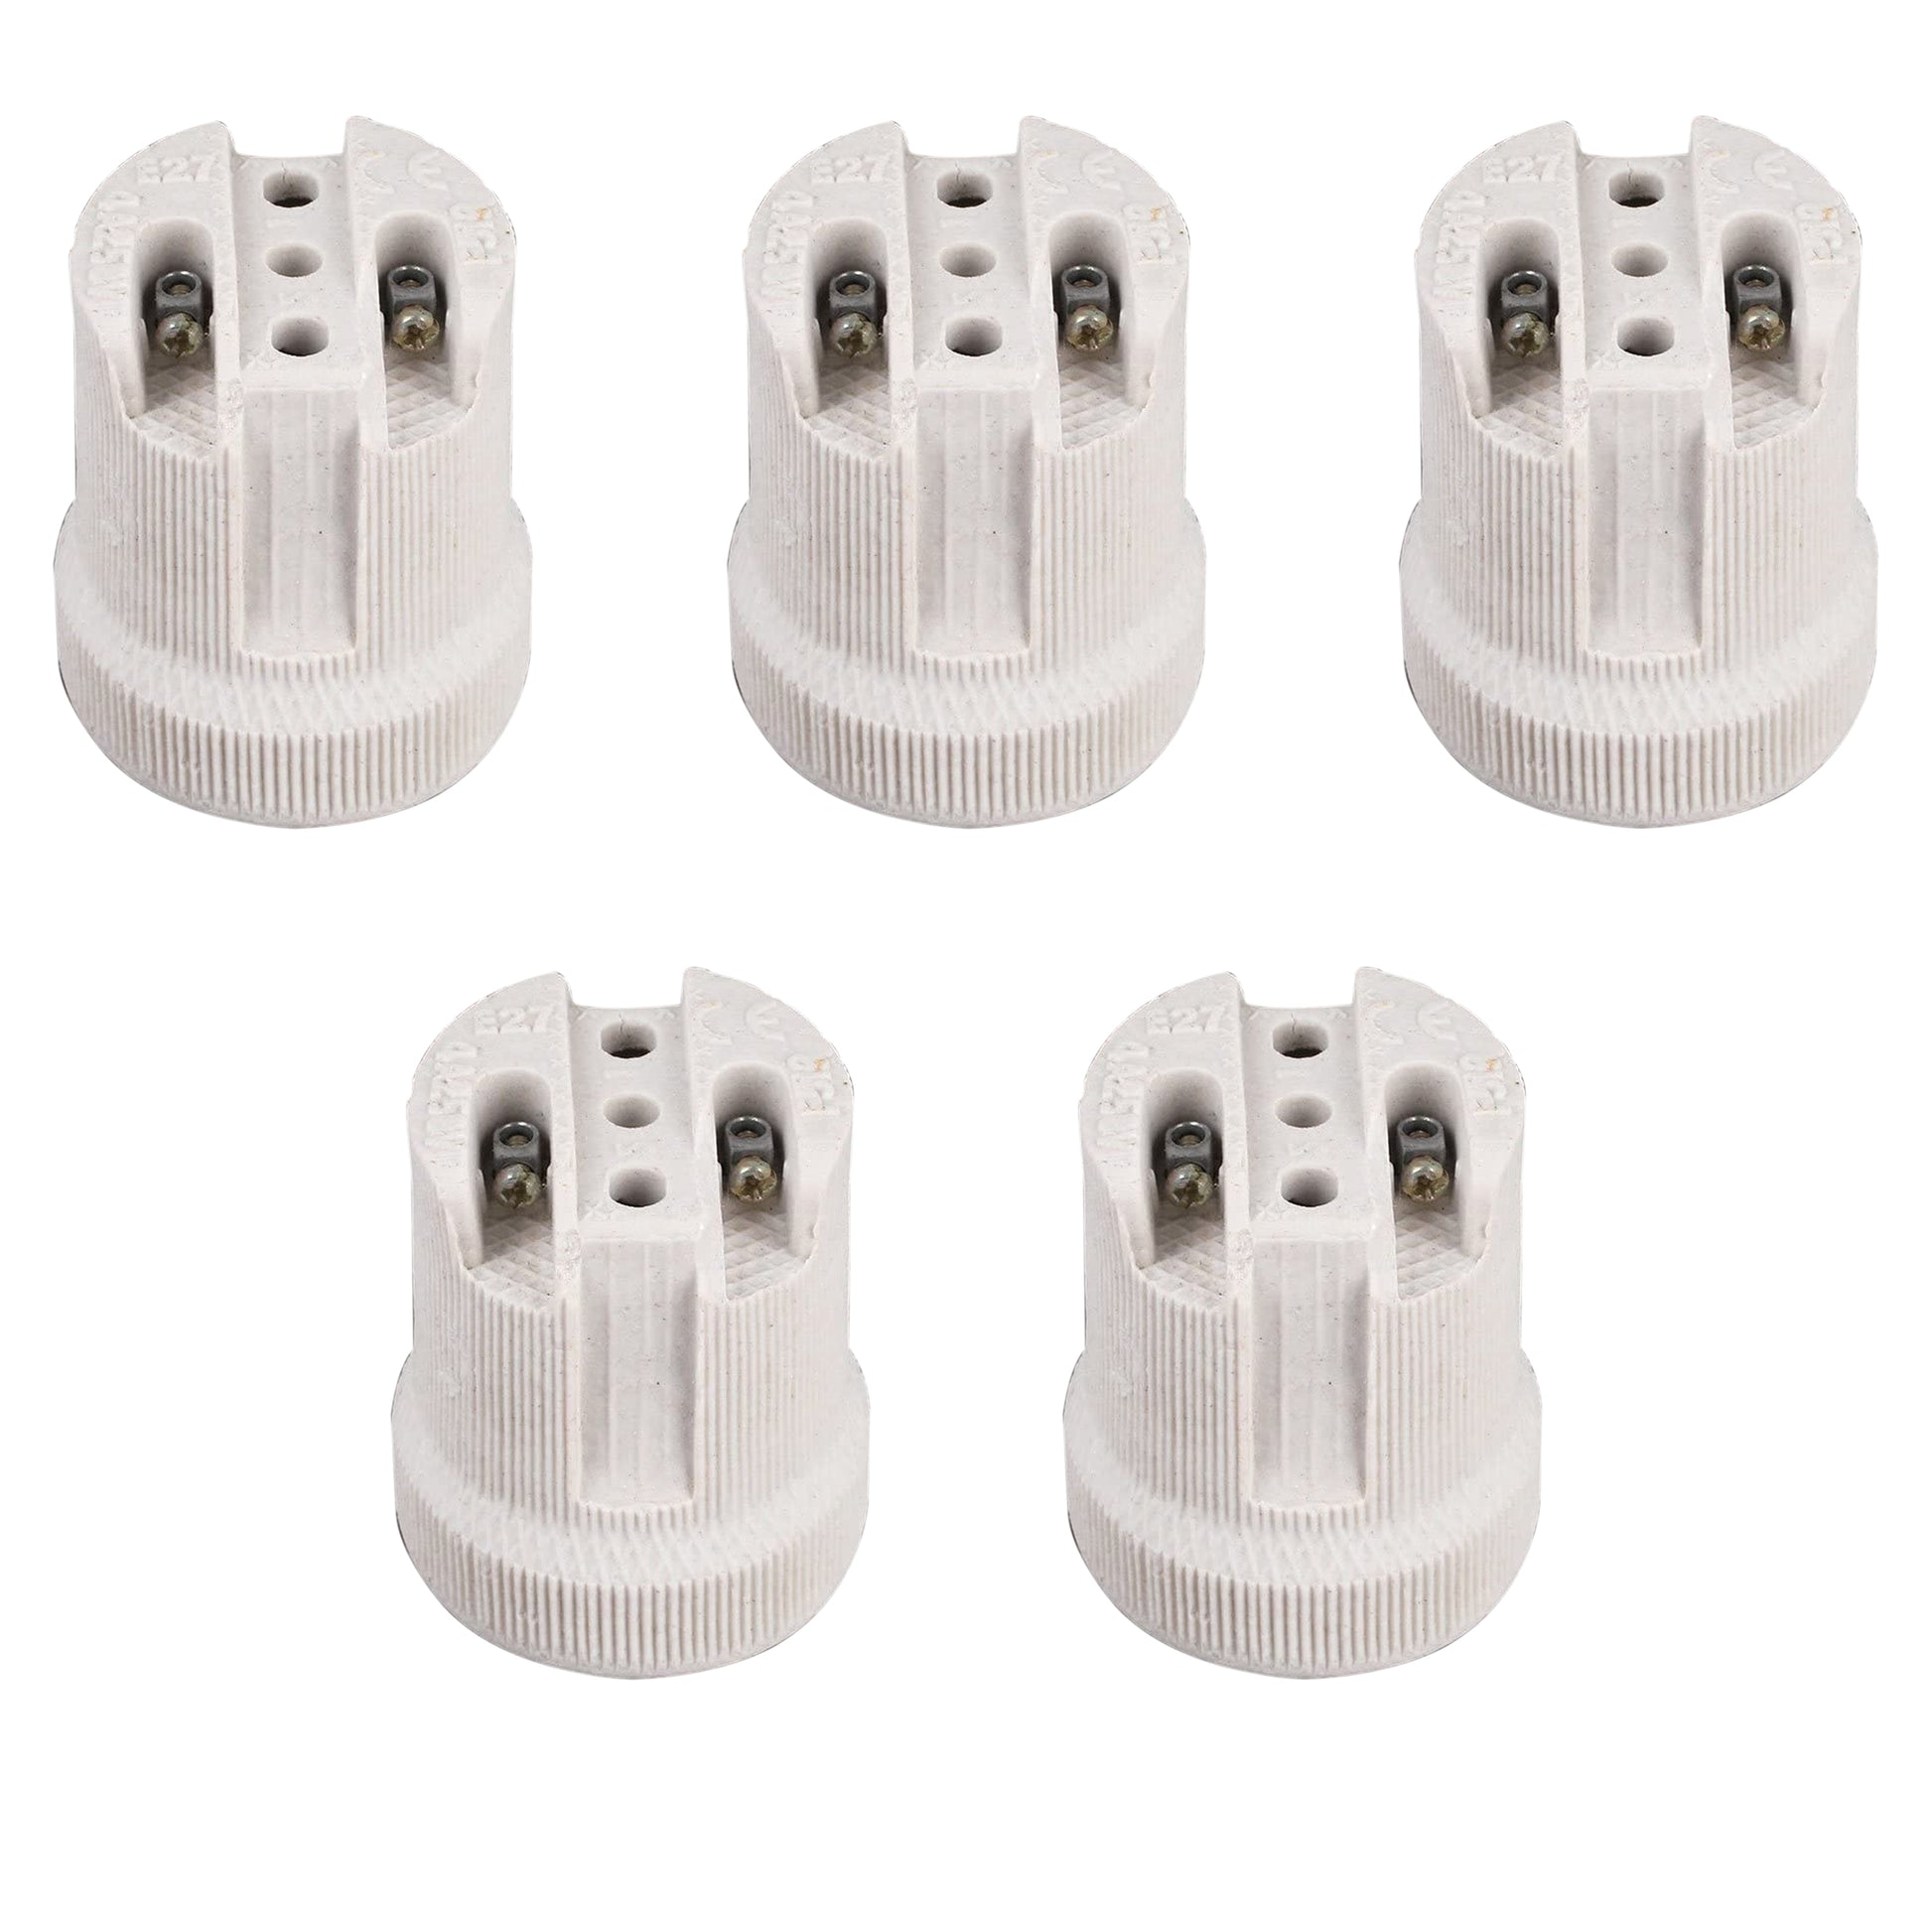 5 Pack E27 Bulb Holder Edison Screw White Ceramic Porcelain Lamp holder For Table Lamp E27 60W Plain Lamp holder Socket UK .